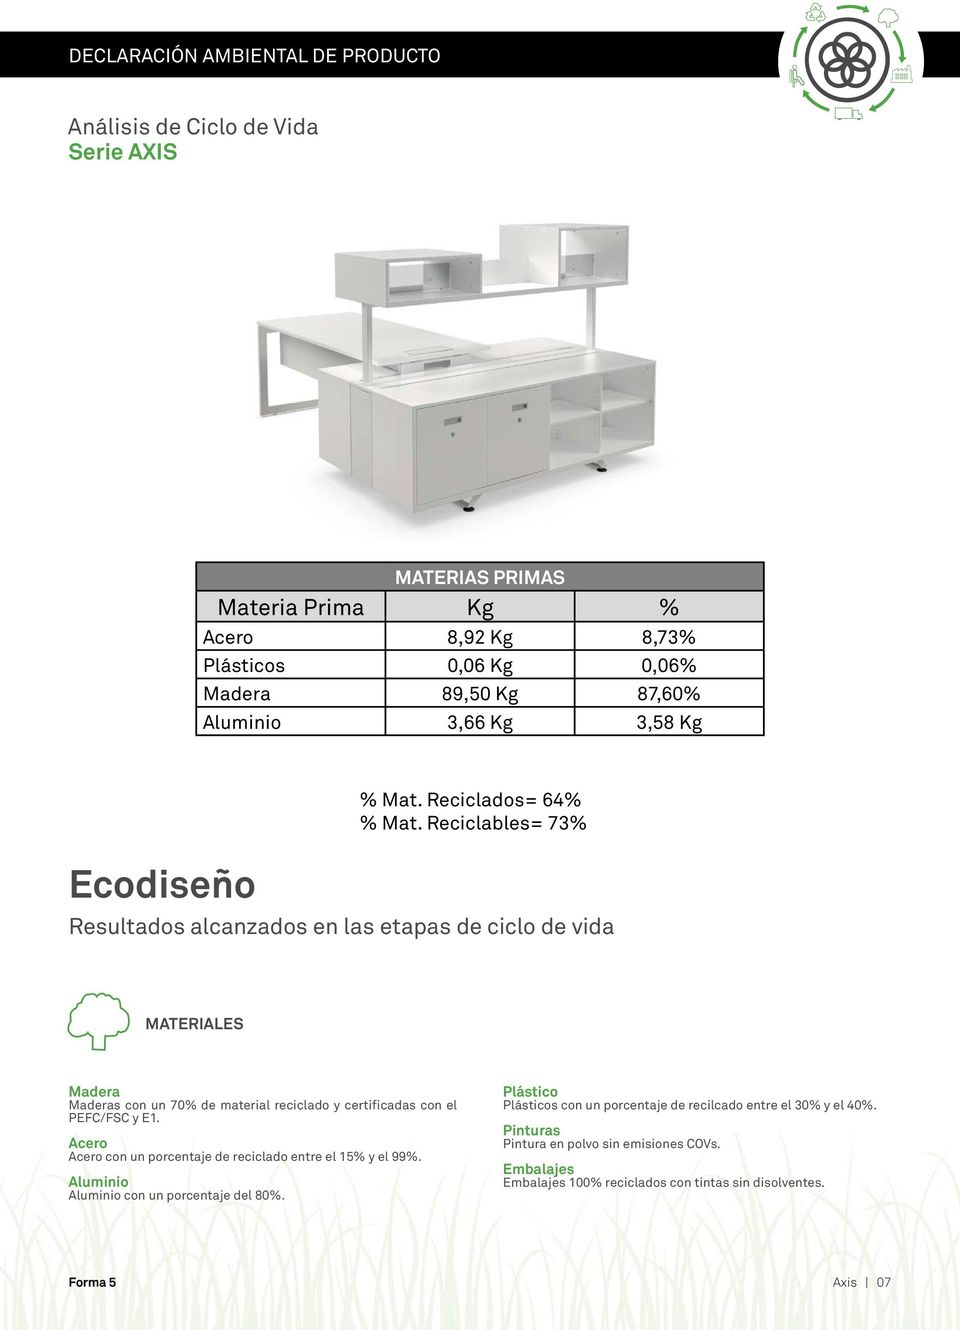 Reciclables= 73% Resultados alcanzados en las etapas de ciclo de vida MTERILES Madera Maderas con un 70% de material reciclado y certificadas con el PEFC/FSC y E1.